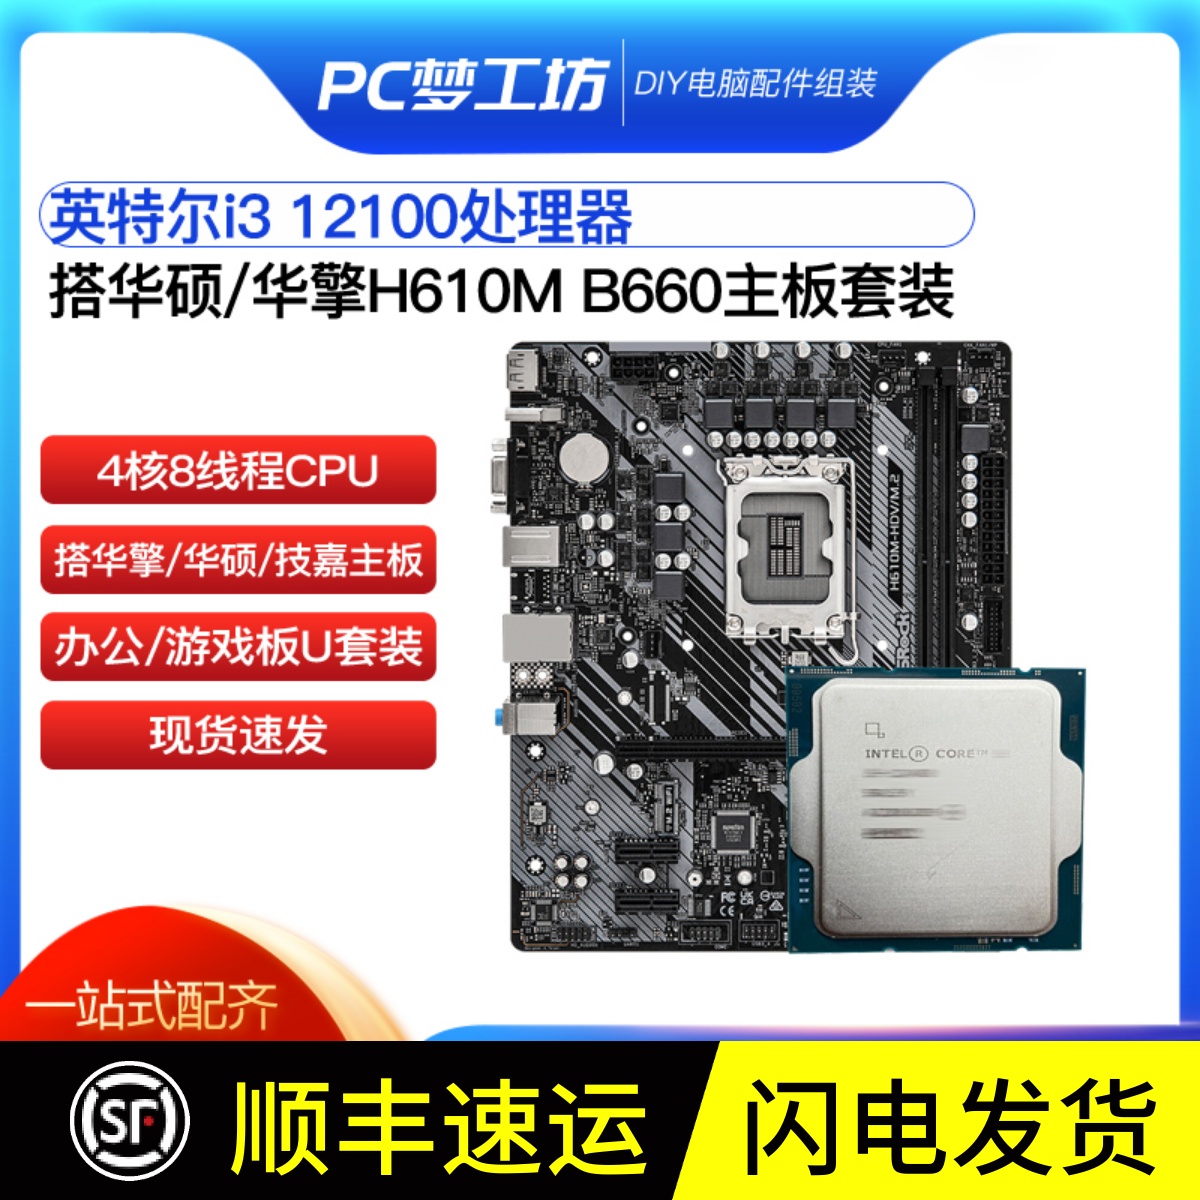 英特尔 核显i3 12100散片CPU选配华硕华擎H610M B660主板CPU套装